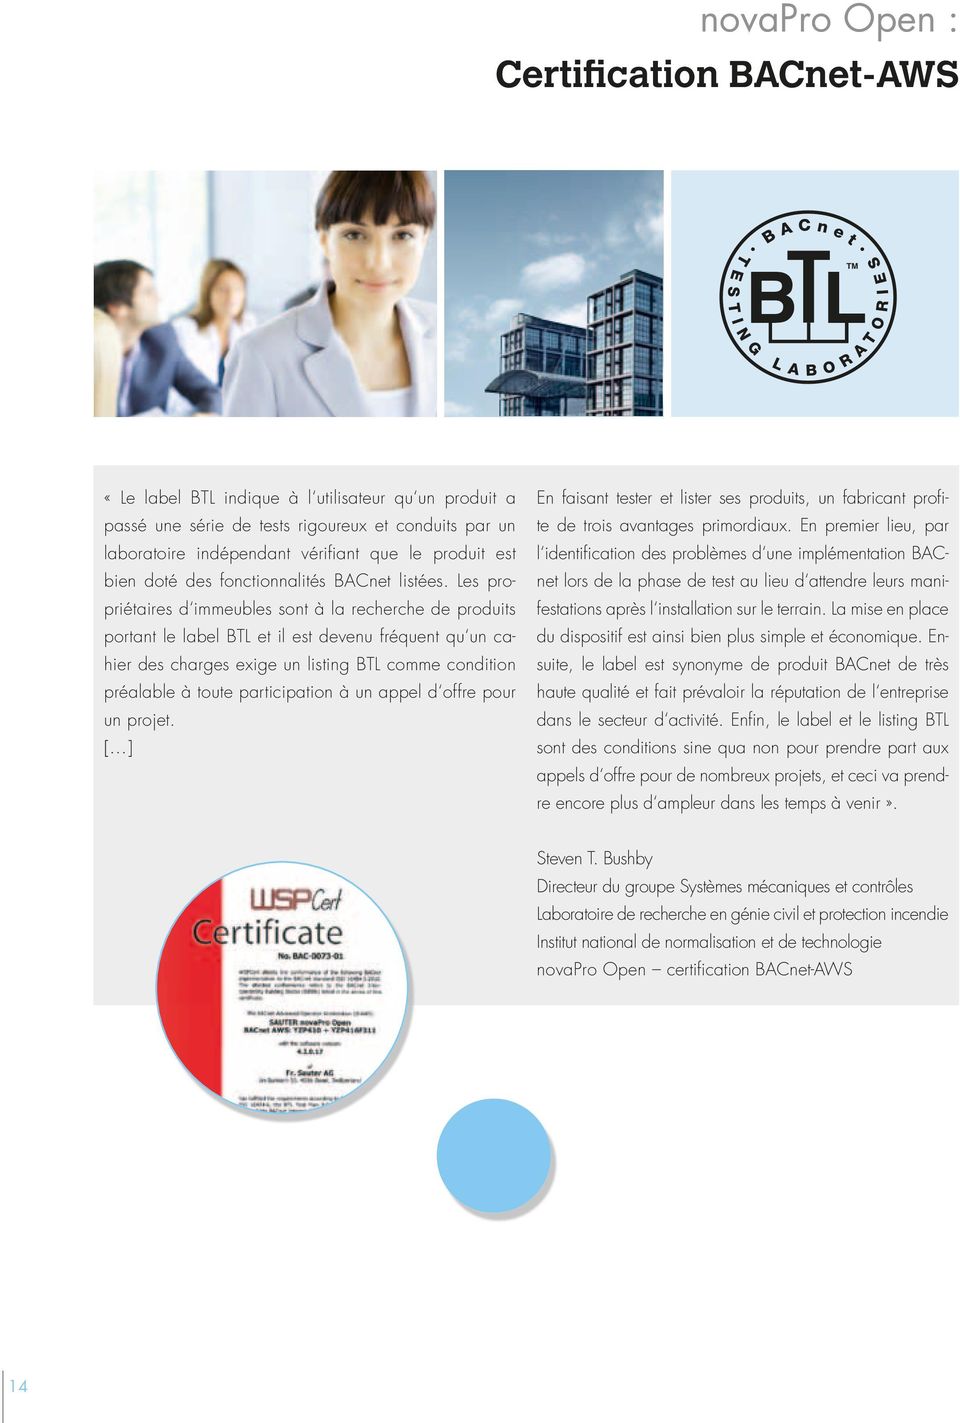 Les propriétaires d immeubles sont à la recherche de produits portant le label BTL et il est devenu fréquent qu un cahier des charges exige un listing BTL comme condition préalable à toute